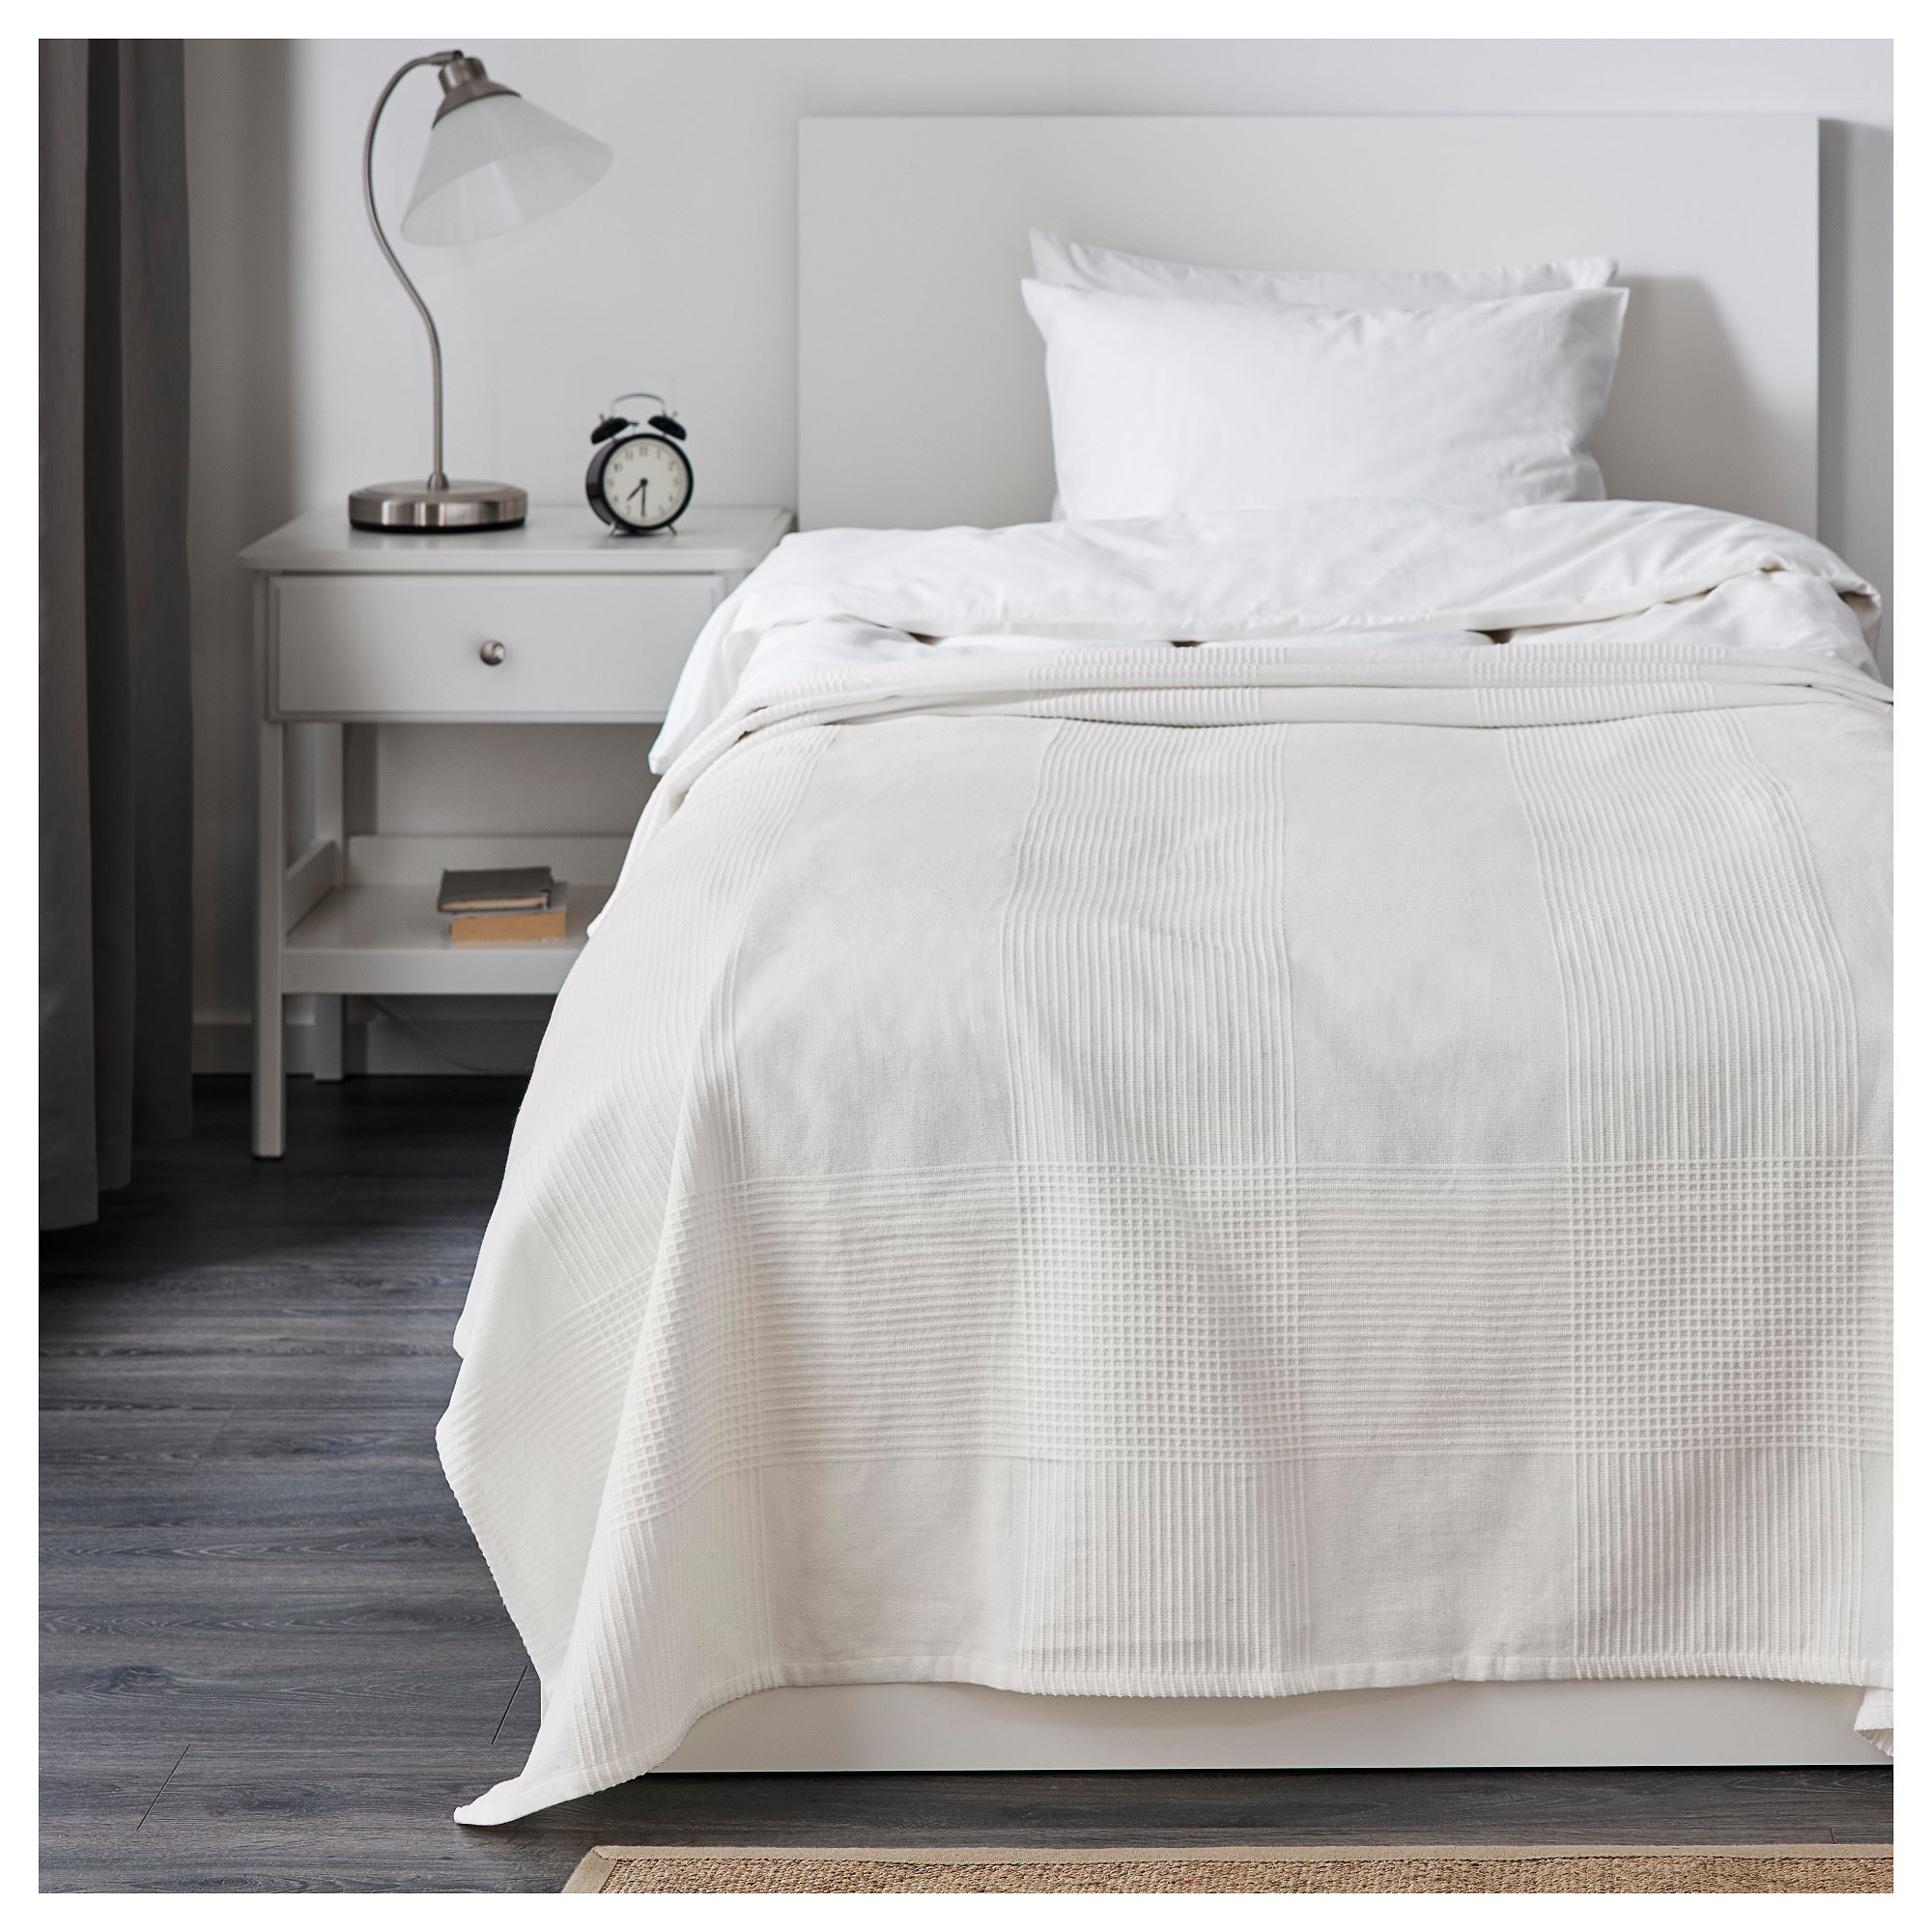 INDIRA tek kişilik yatak örtüsü, beyaz, 150x250 cm